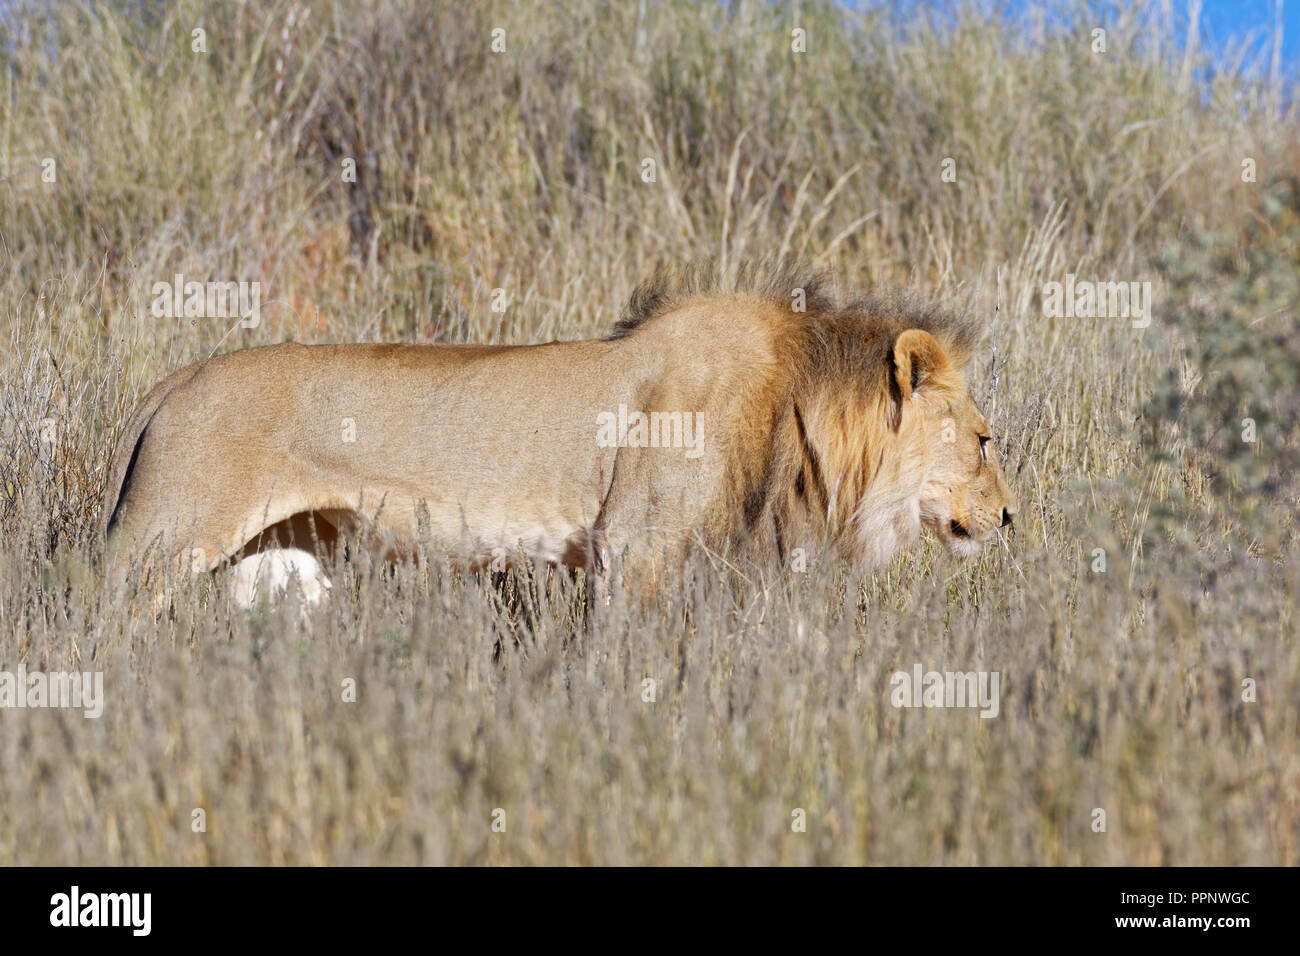 Leone africano (Panthera leo), maschio adulto camminare in alta erba secca, Kgalagadi Parco transfrontaliero, Northern Cape, Sud Africa Foto Stock